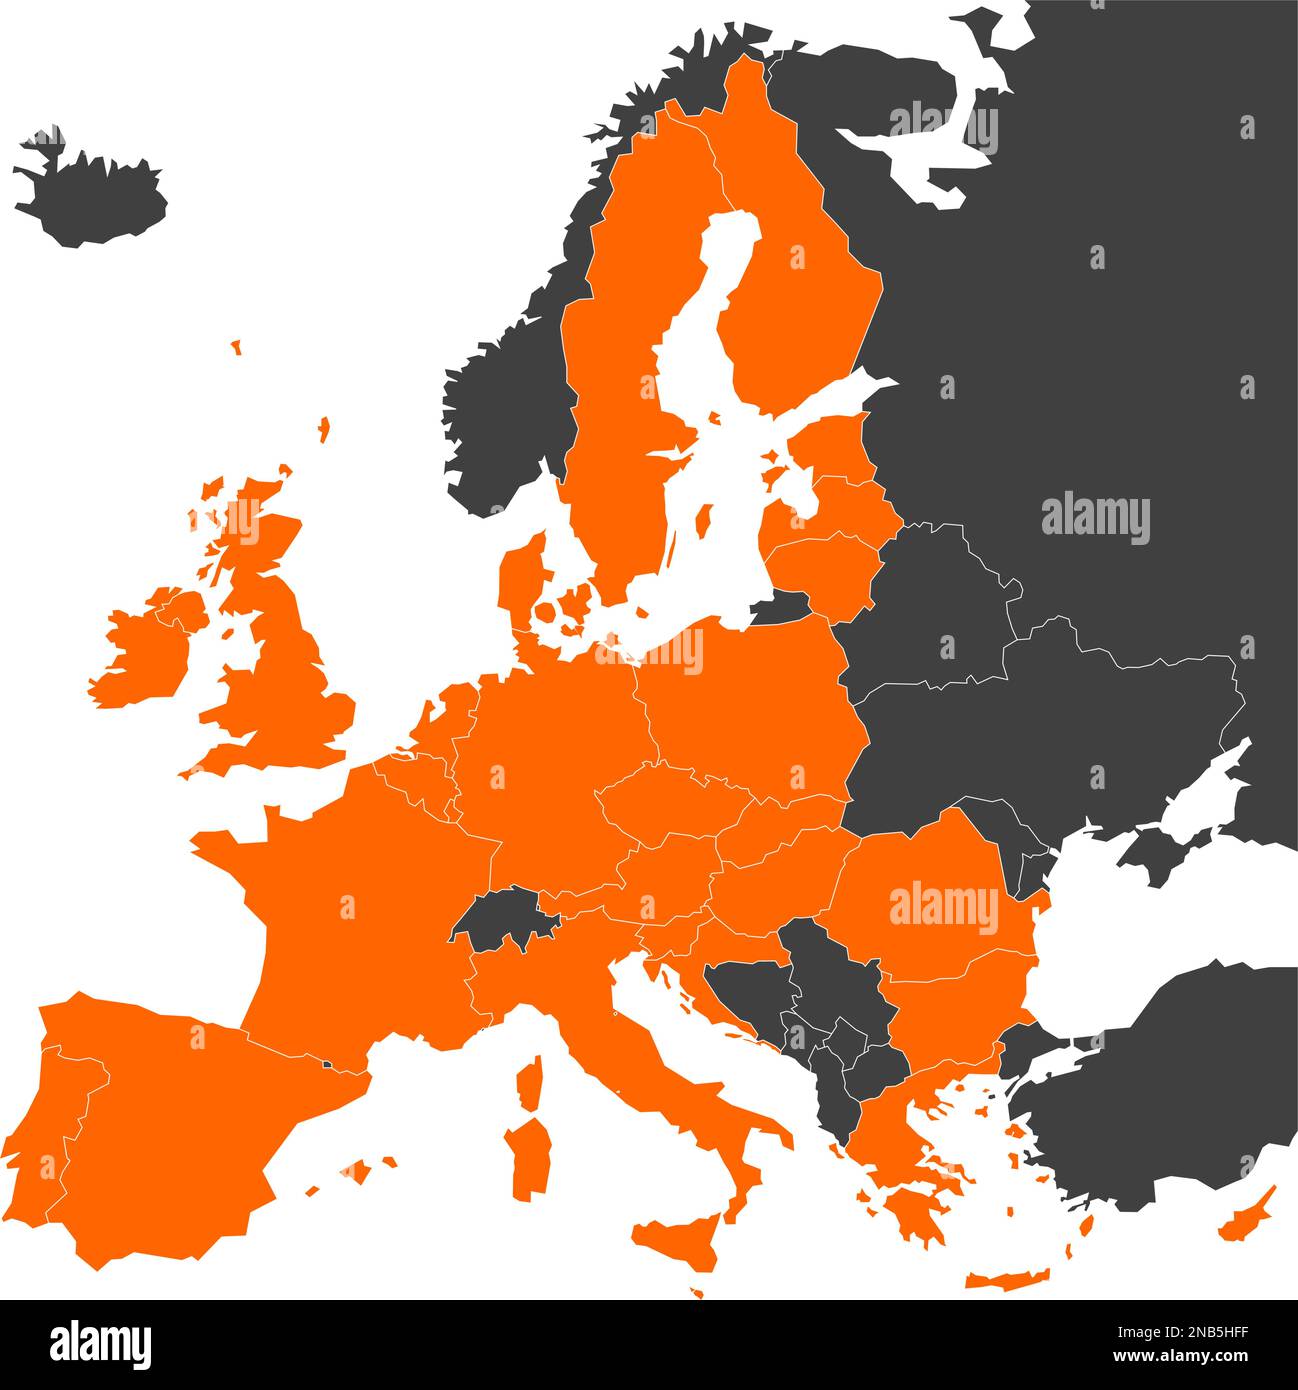 Mappa grigia dell'Europa con 28 stati membri dell'UE evidenziati in arancione. Illustrazione vettoriale. Mappa semplificata dell'Unione europea. Illustrazione Vettoriale